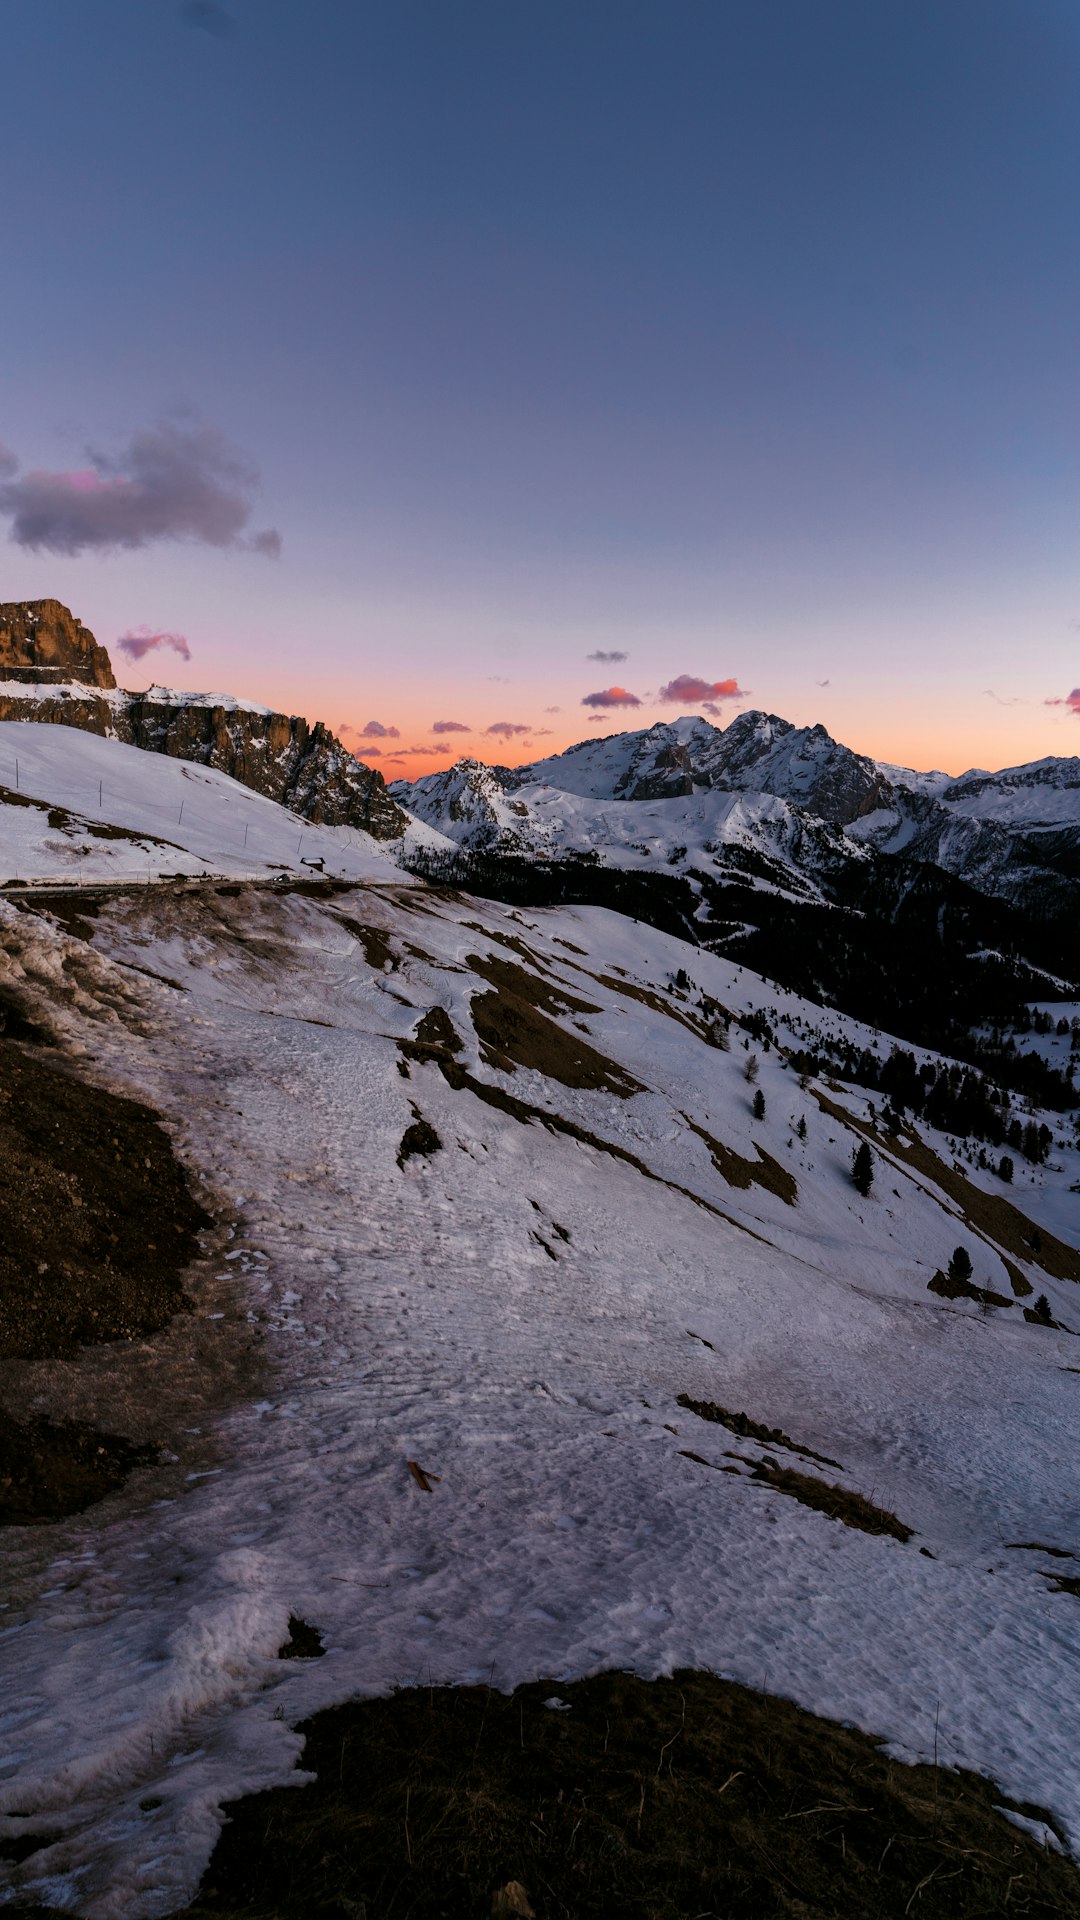 Mountain range photo spot Dolomiti di Sesto 32041 Auronzo di Cadore